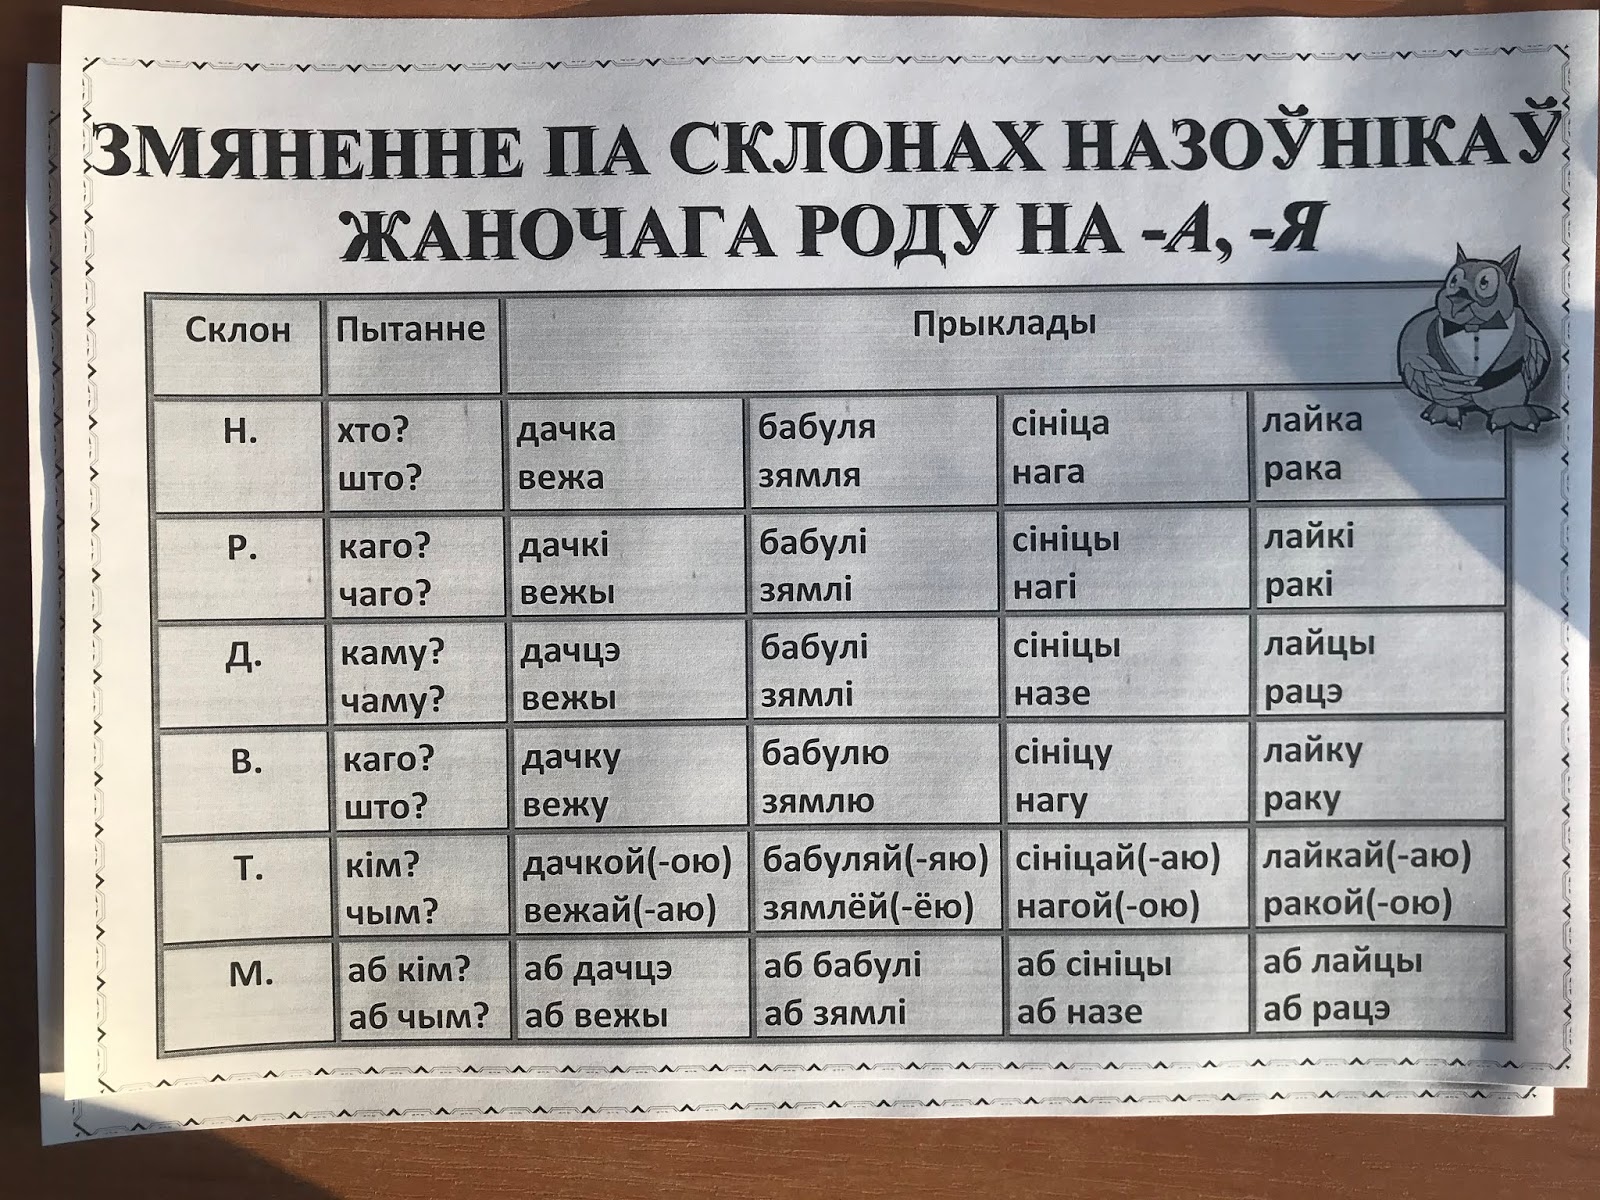 Род назоўнікаў у беларускай мове